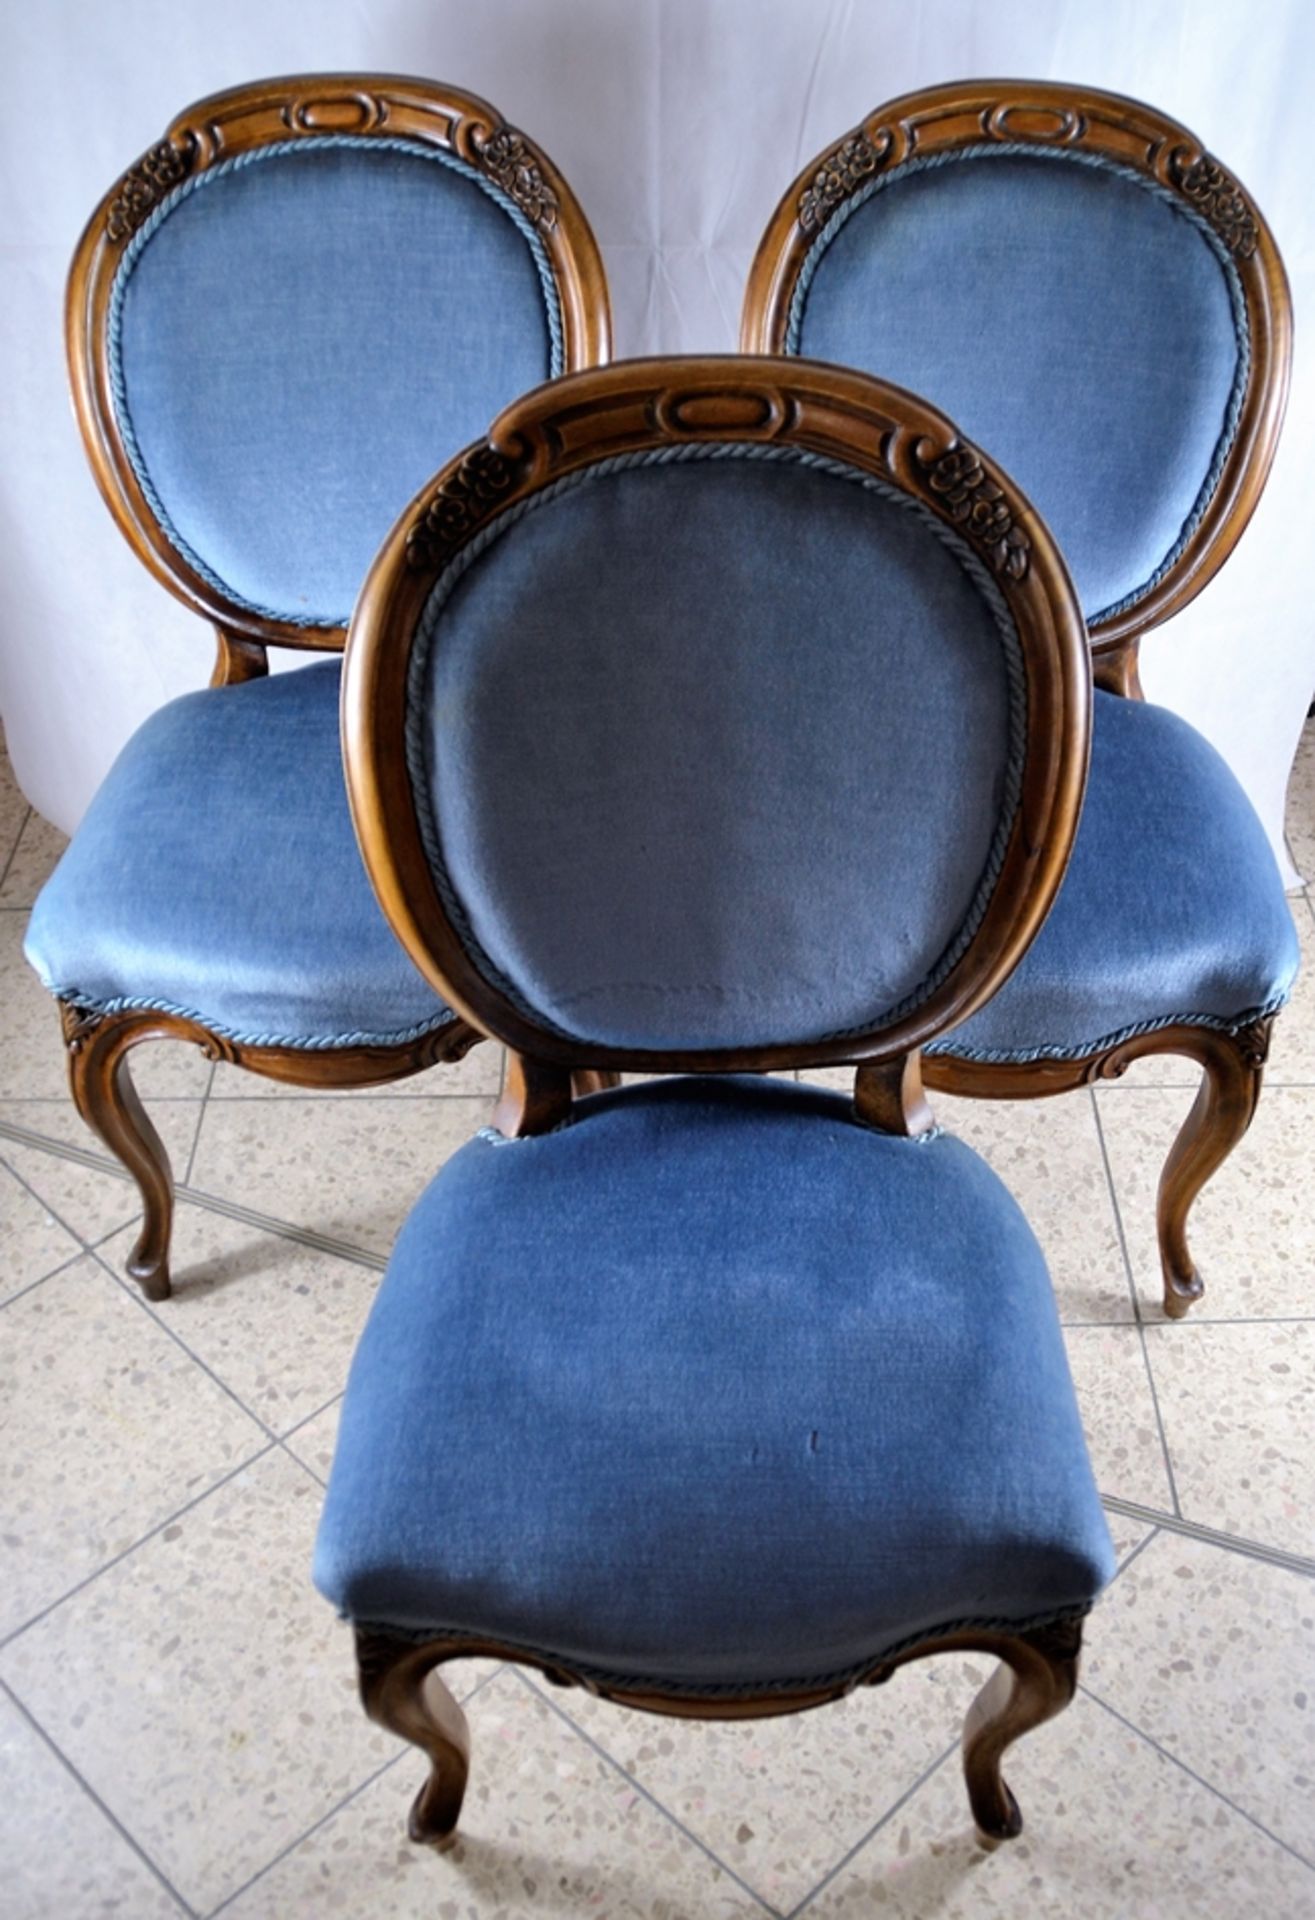 3 Medaillon Stühle 19 Jhdt. Buche, gepolstert, ovale Lehnen, geschweifte Beine, Schnitzereien - Bild 2 aus 6